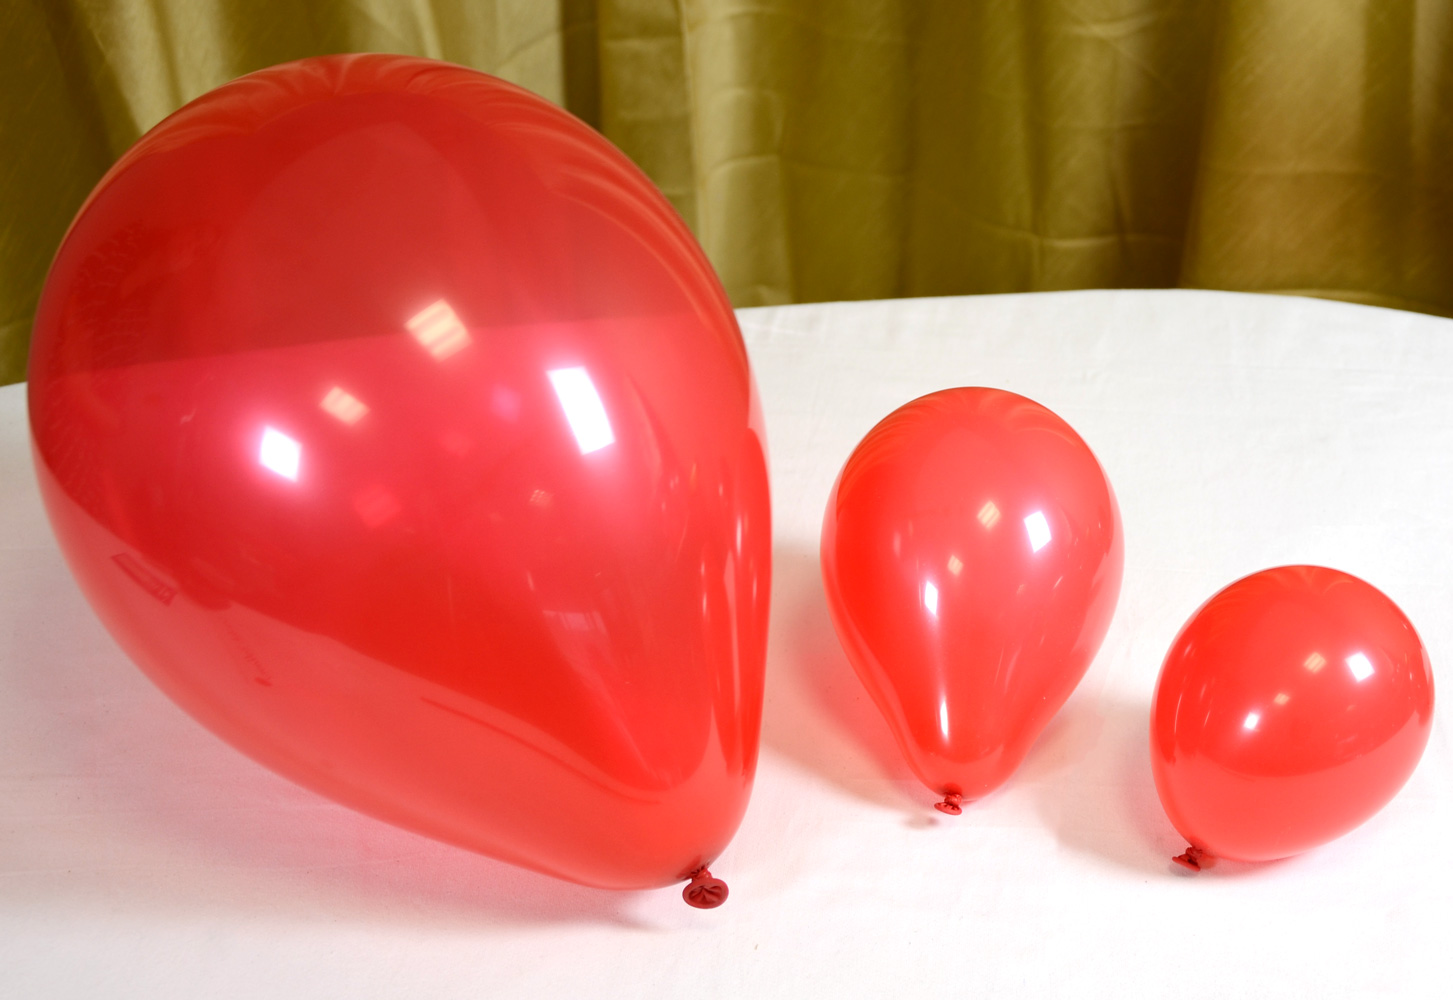 Three balloon sizes